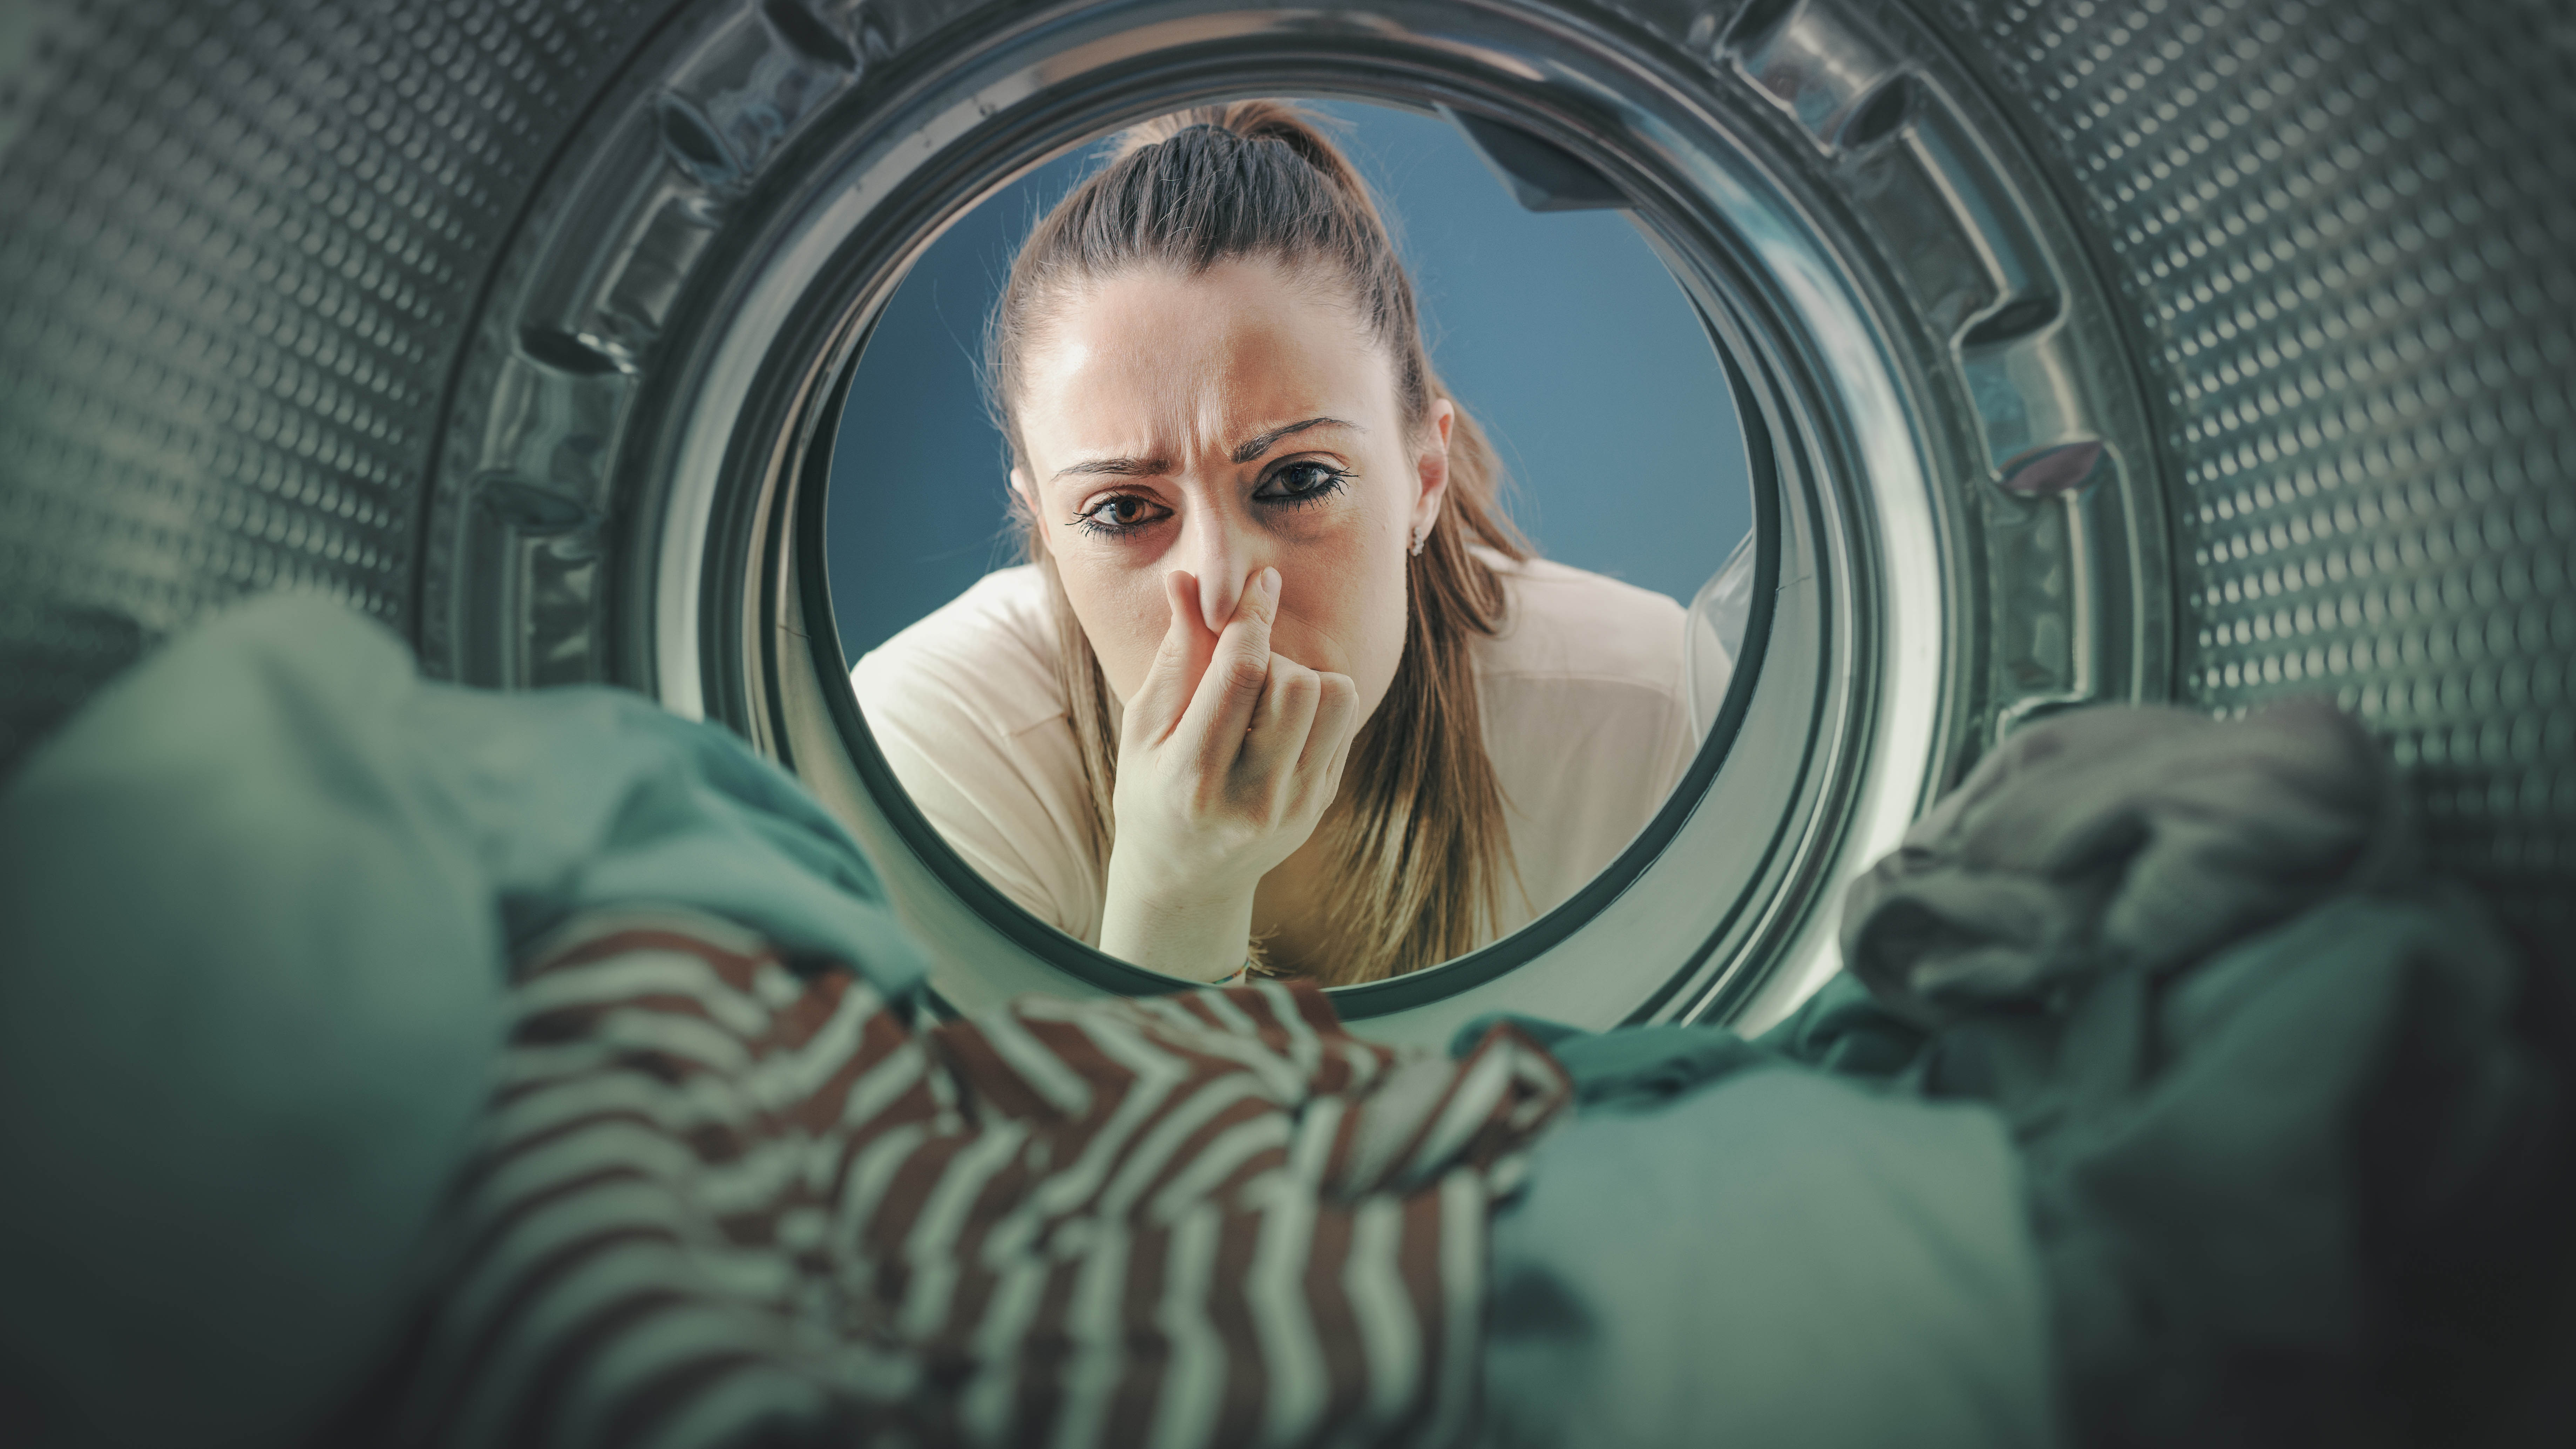 Çamaşır makinesinin içindeki çamaşırlara bakarken burnunu tutan bir kadın.